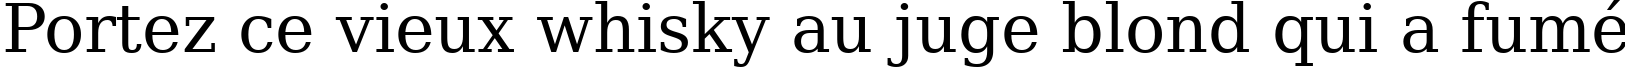 Пример написания шрифтом ae_Tholoth текста на французском